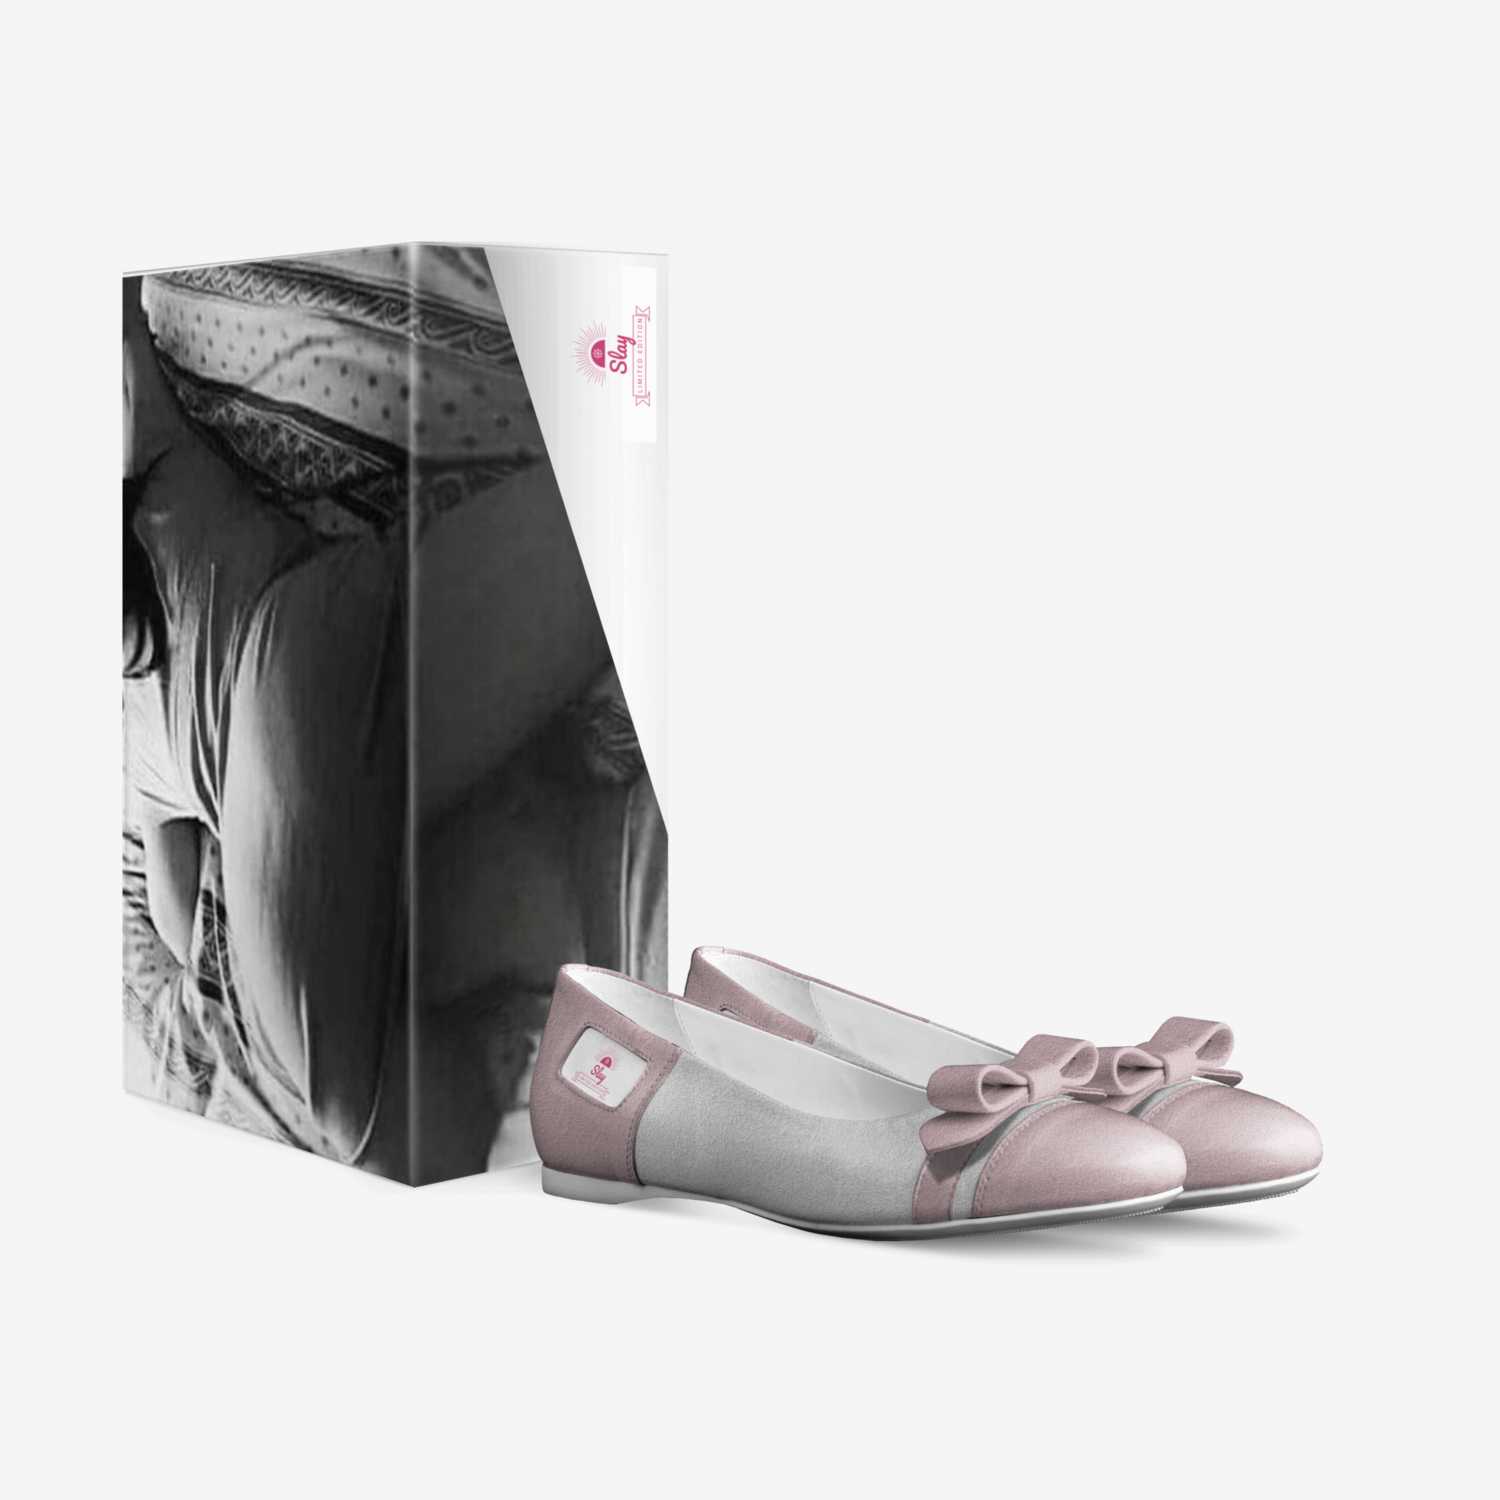 Slay custom made in Italy shoes by Moffatt Gordon | Box view